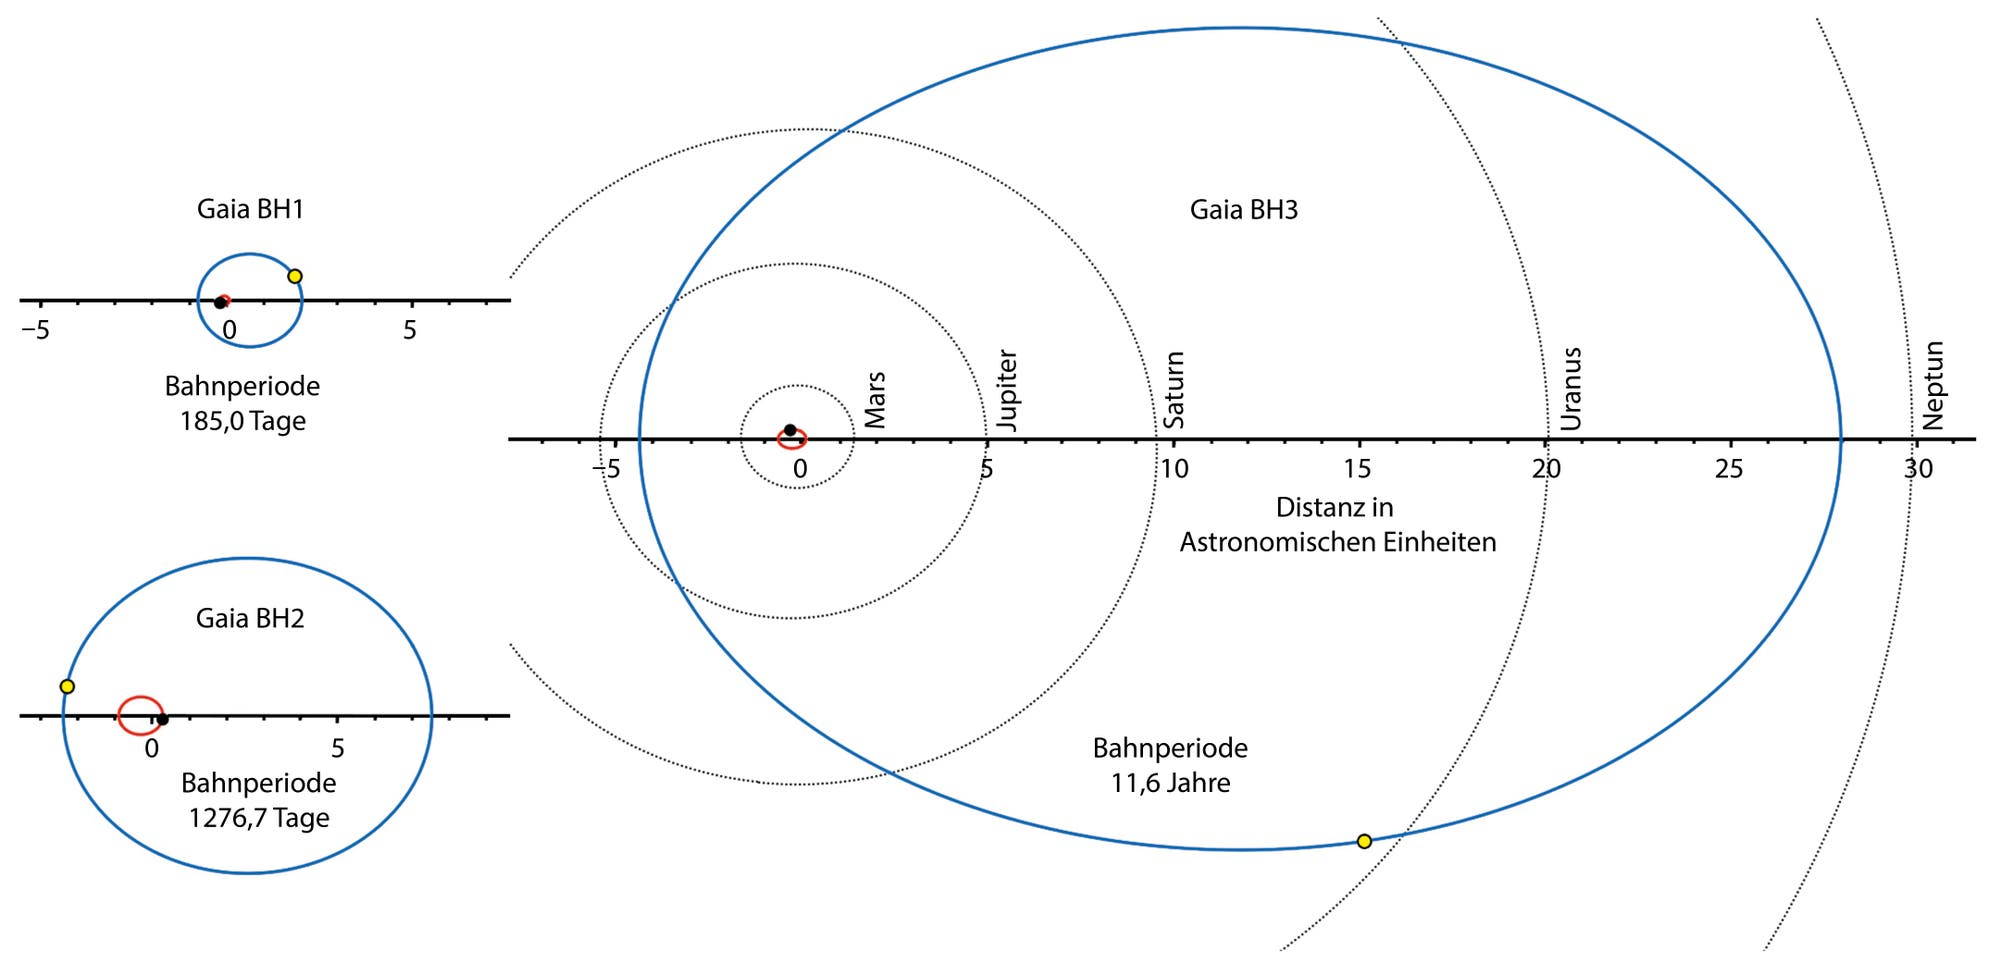 Descripción general de los tres agujeros negros de Gaia BH1 a BH3 medidos con GAIA.